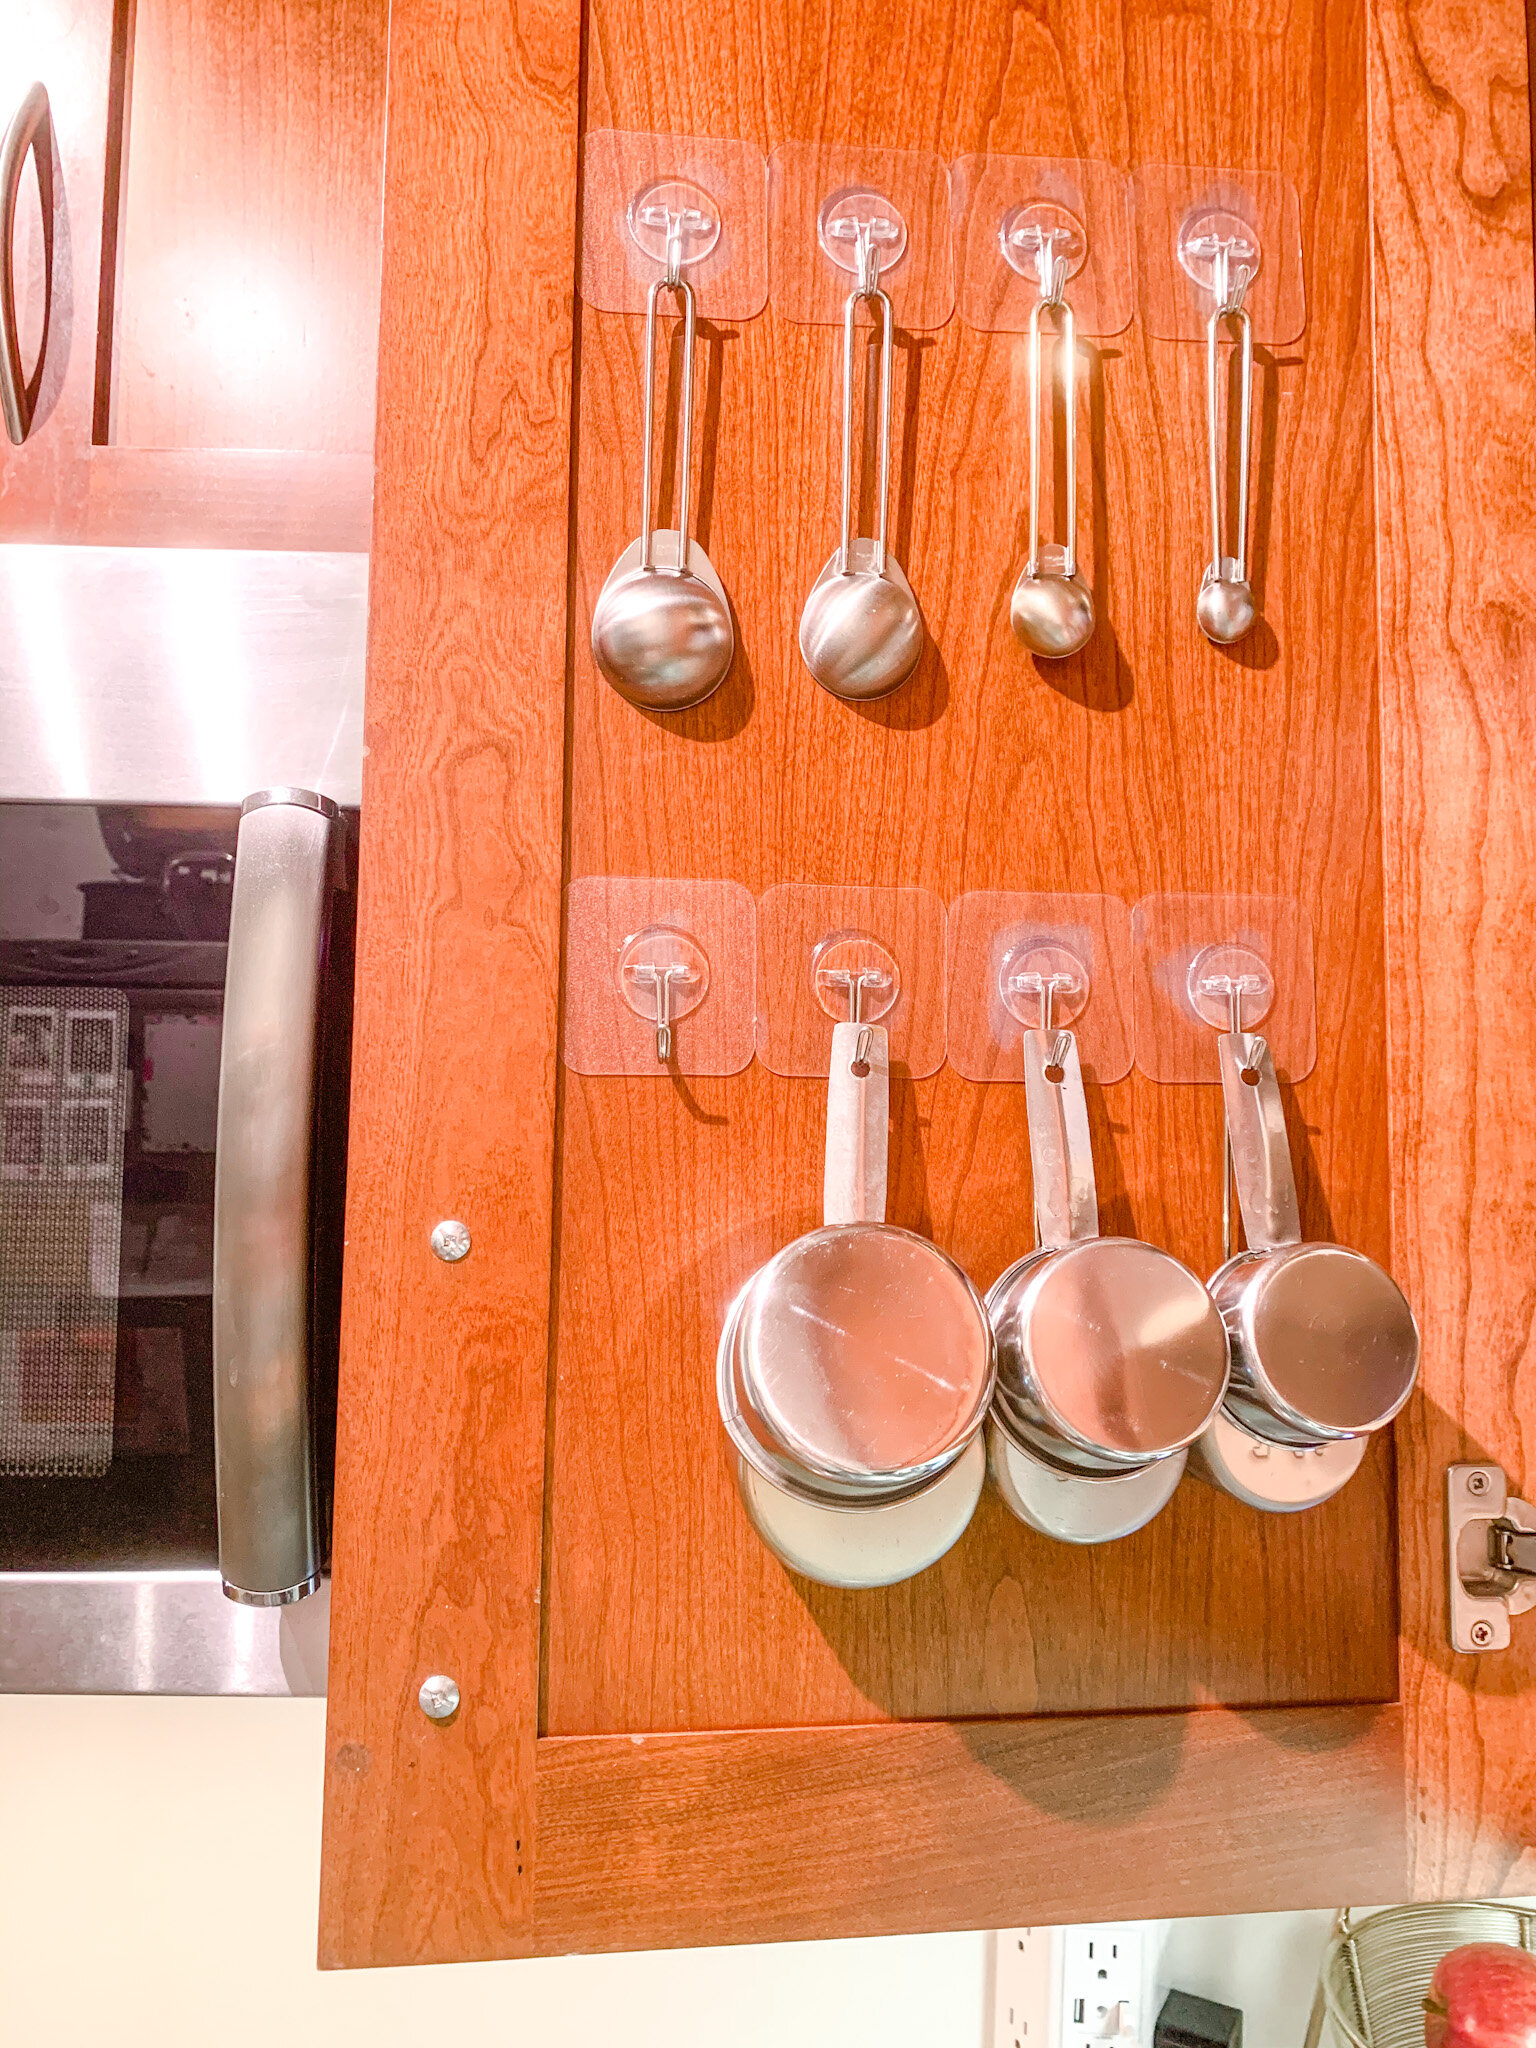 Measuring Cup and Spoon Holder, Organizer, Kitchen Storage, Hanger